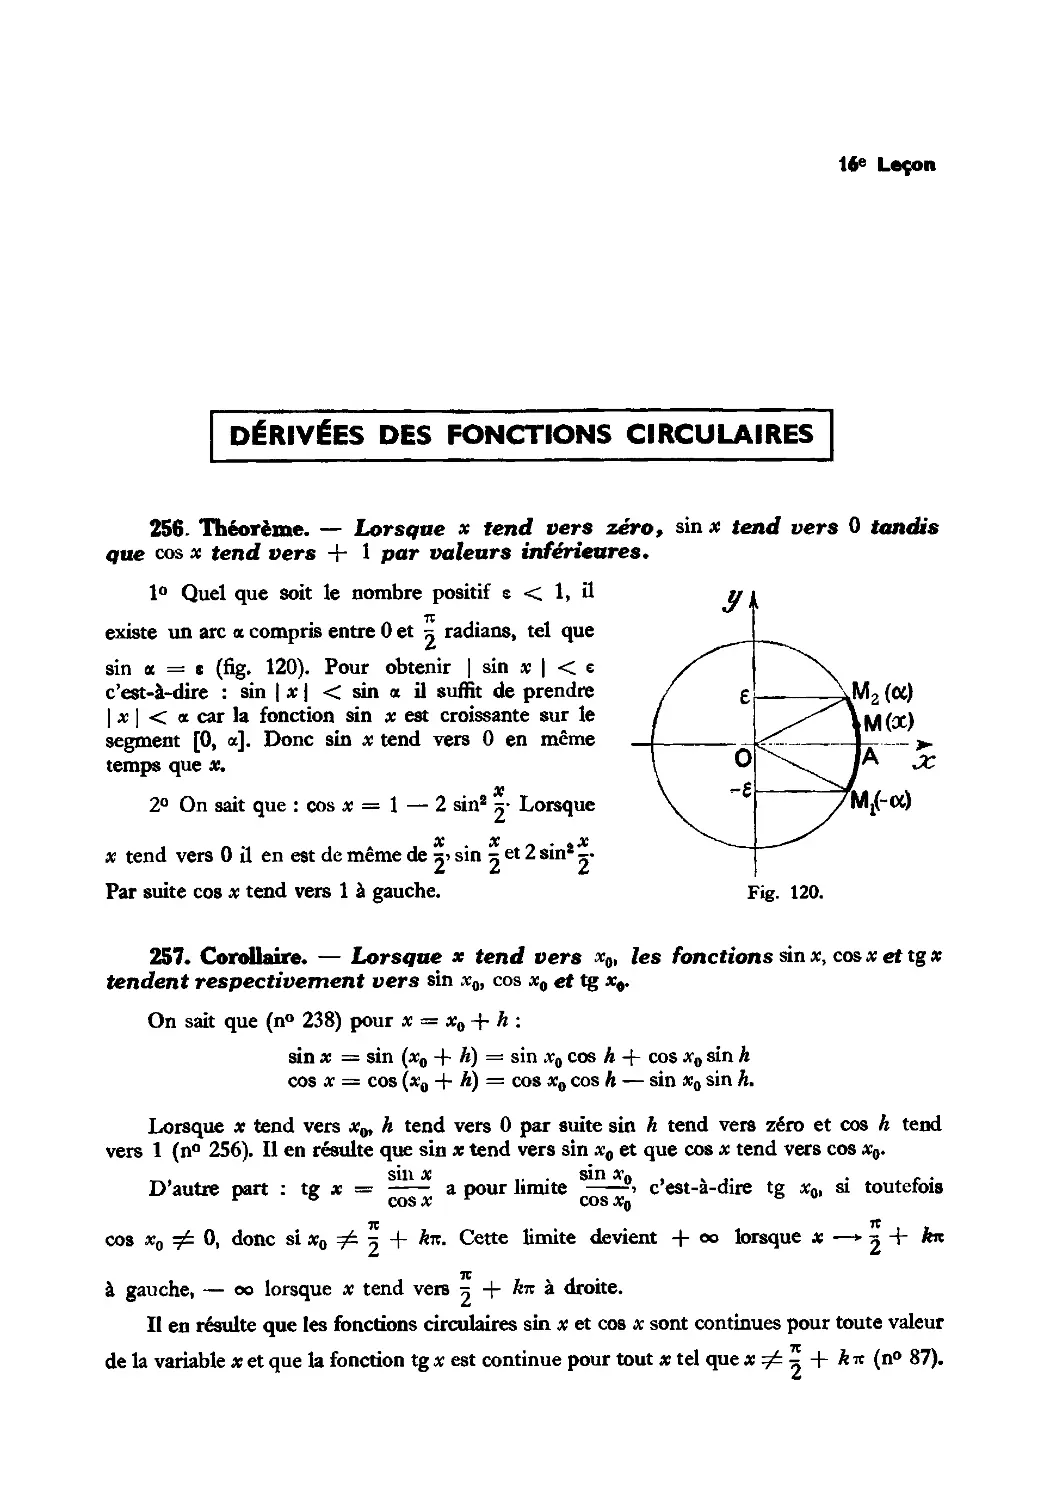 Leçon 16 — Dérivées des fonctions circulaires — Variations des fonctions circulaires
257. Corollaire